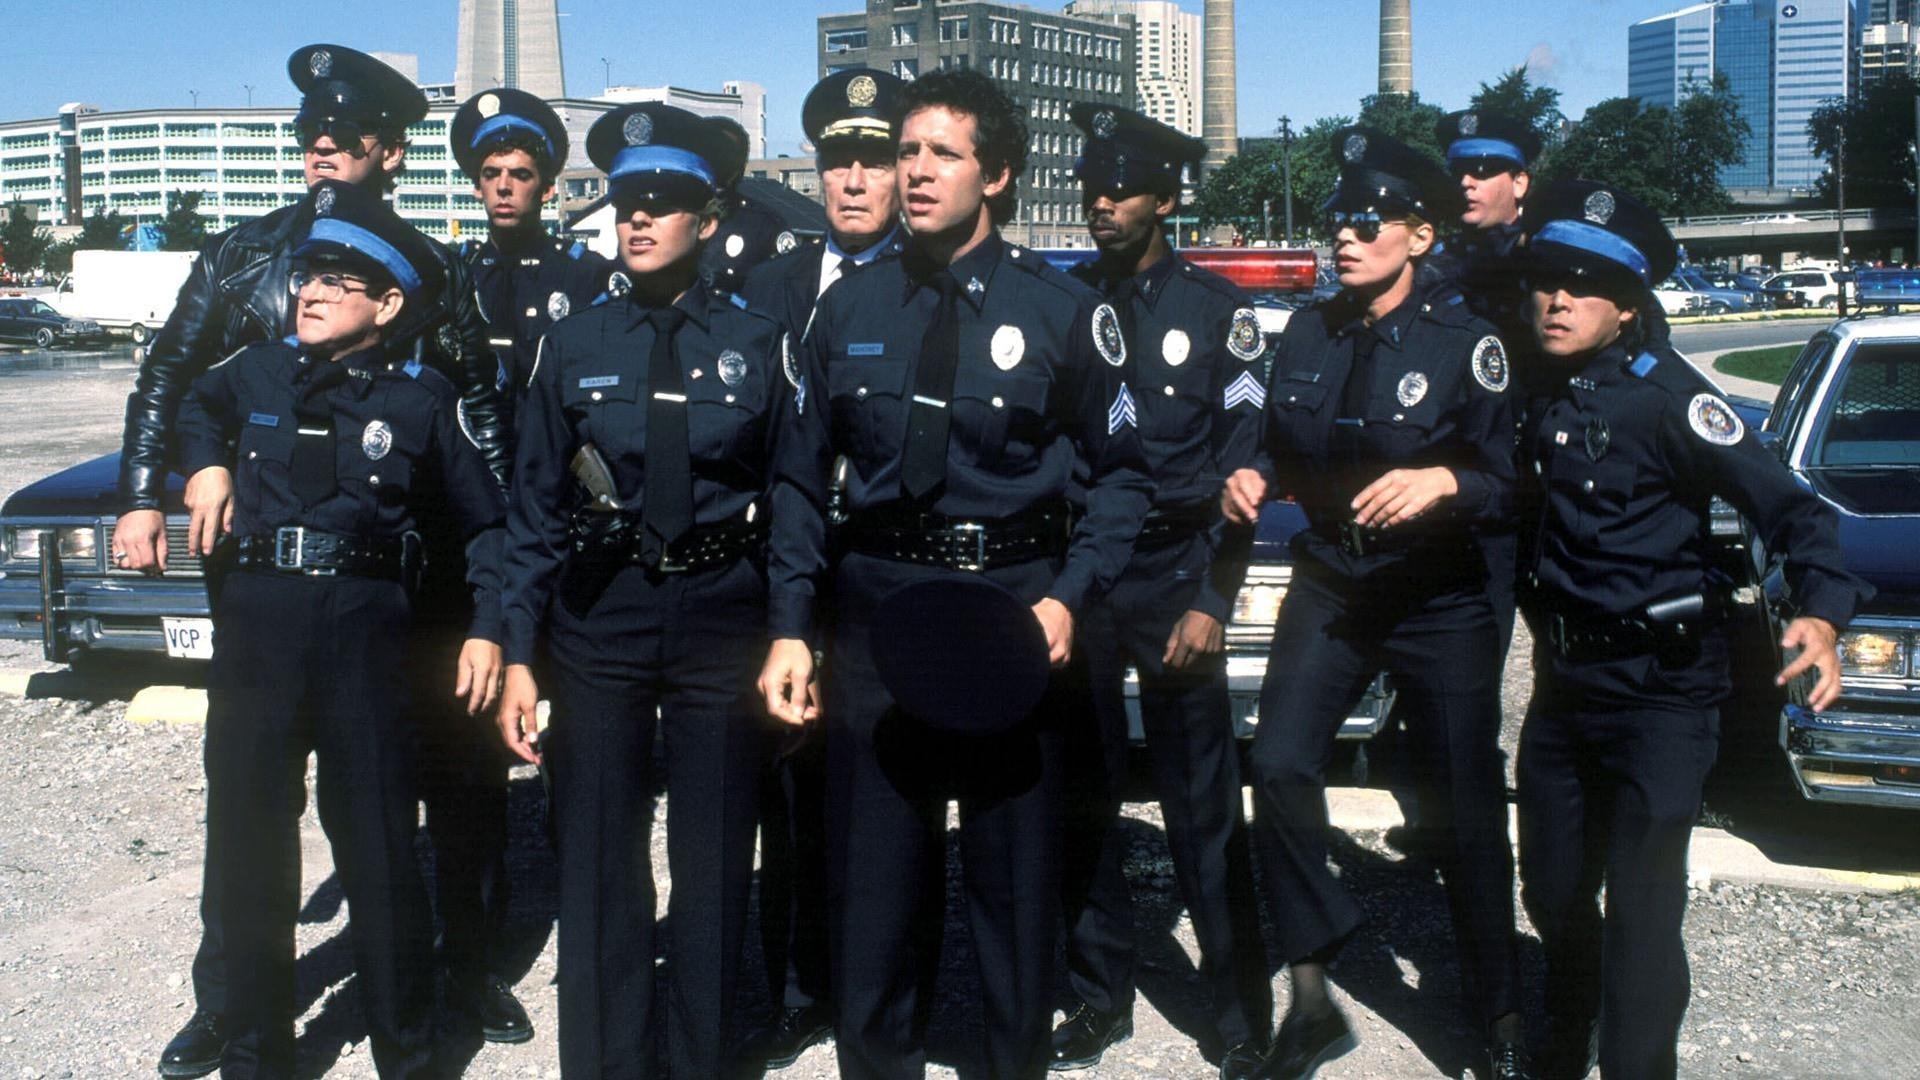 Politiskolen 3 - Tilbake i trening (1986)